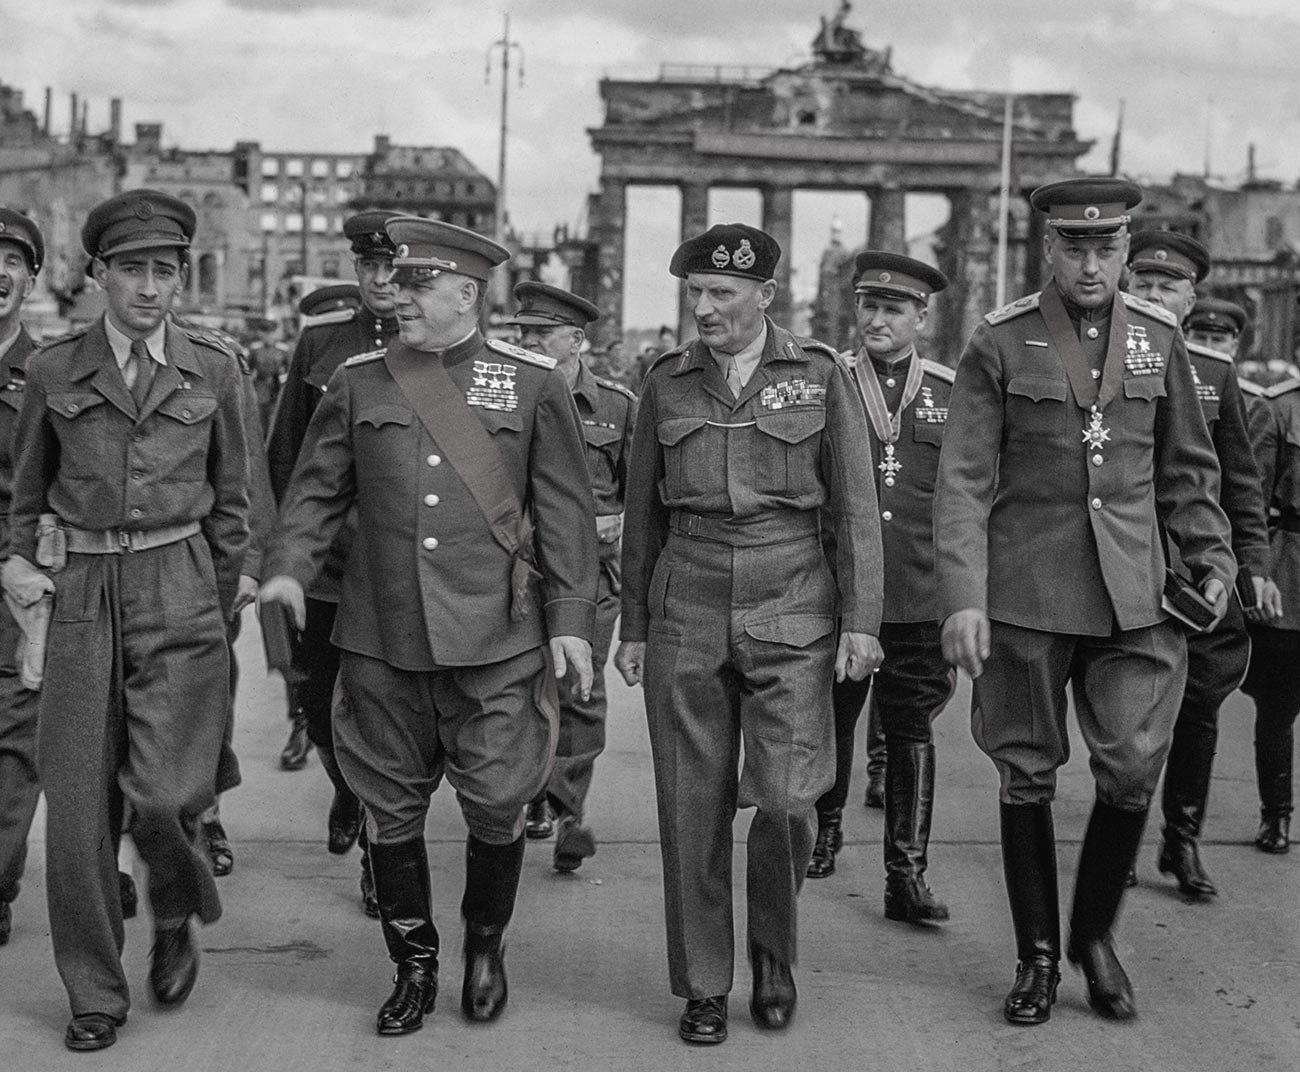 Северозападен фронт, 1942 година. Заменикот на врховниот командант на Црвената армија маршалот Г. Жуков, командантот на 21 група армии фелдмаршалот Бернард Монтгомери, маршалот К. Рокосовски и генералот на Црвената армија Соколовски ја напуштаат Бранденбуршката порта по церемонијата.